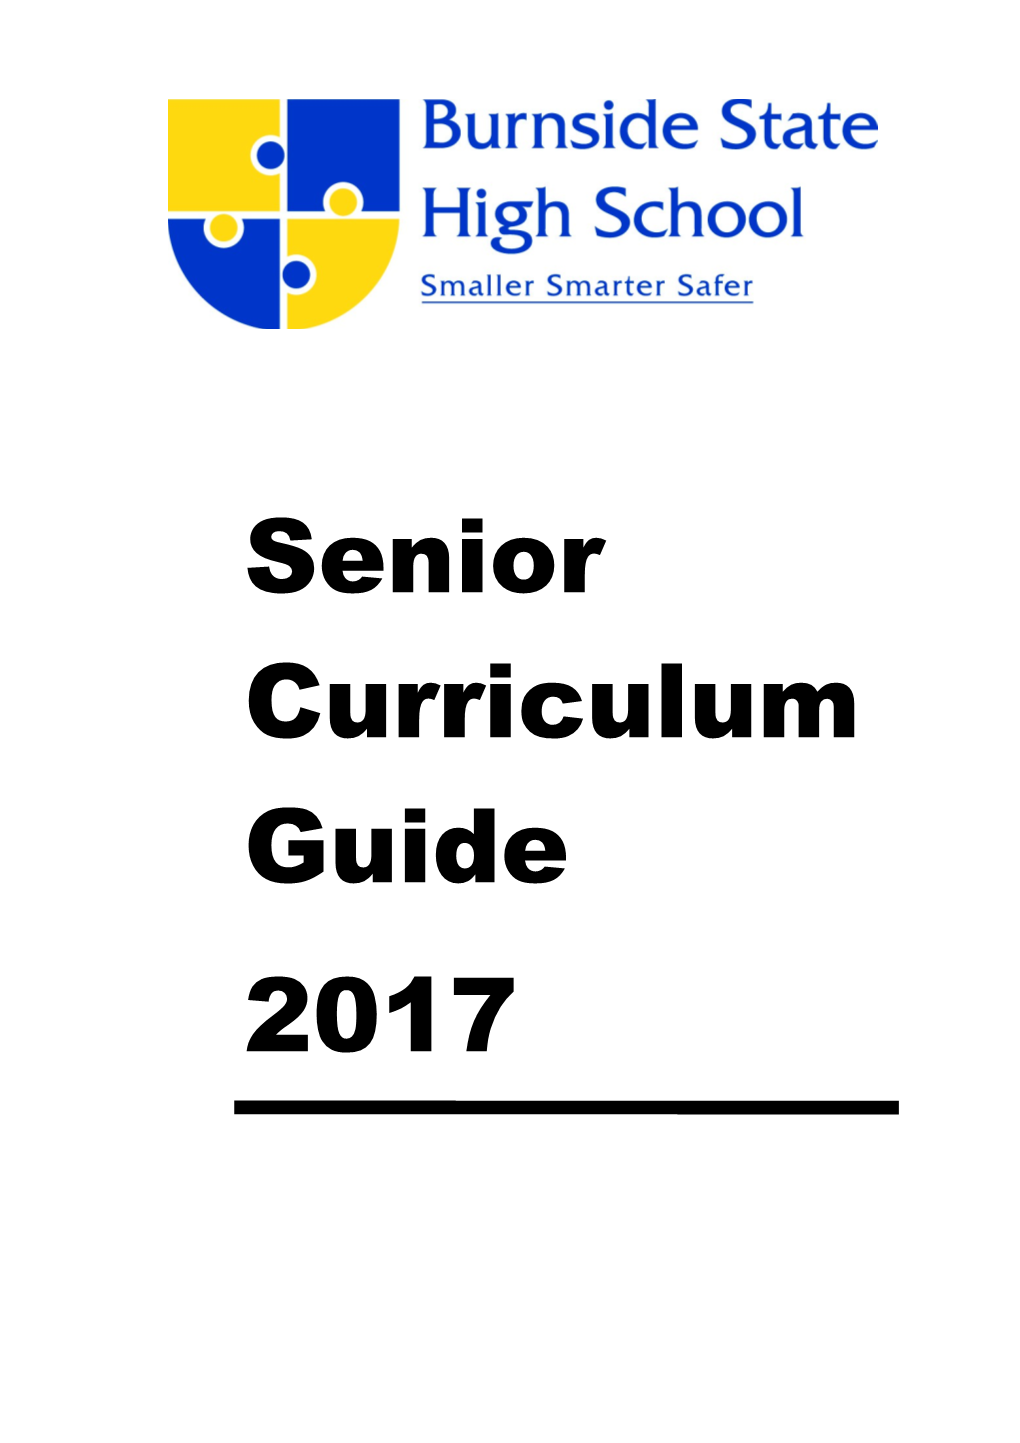 Curriculum Guide 2017 - Senior